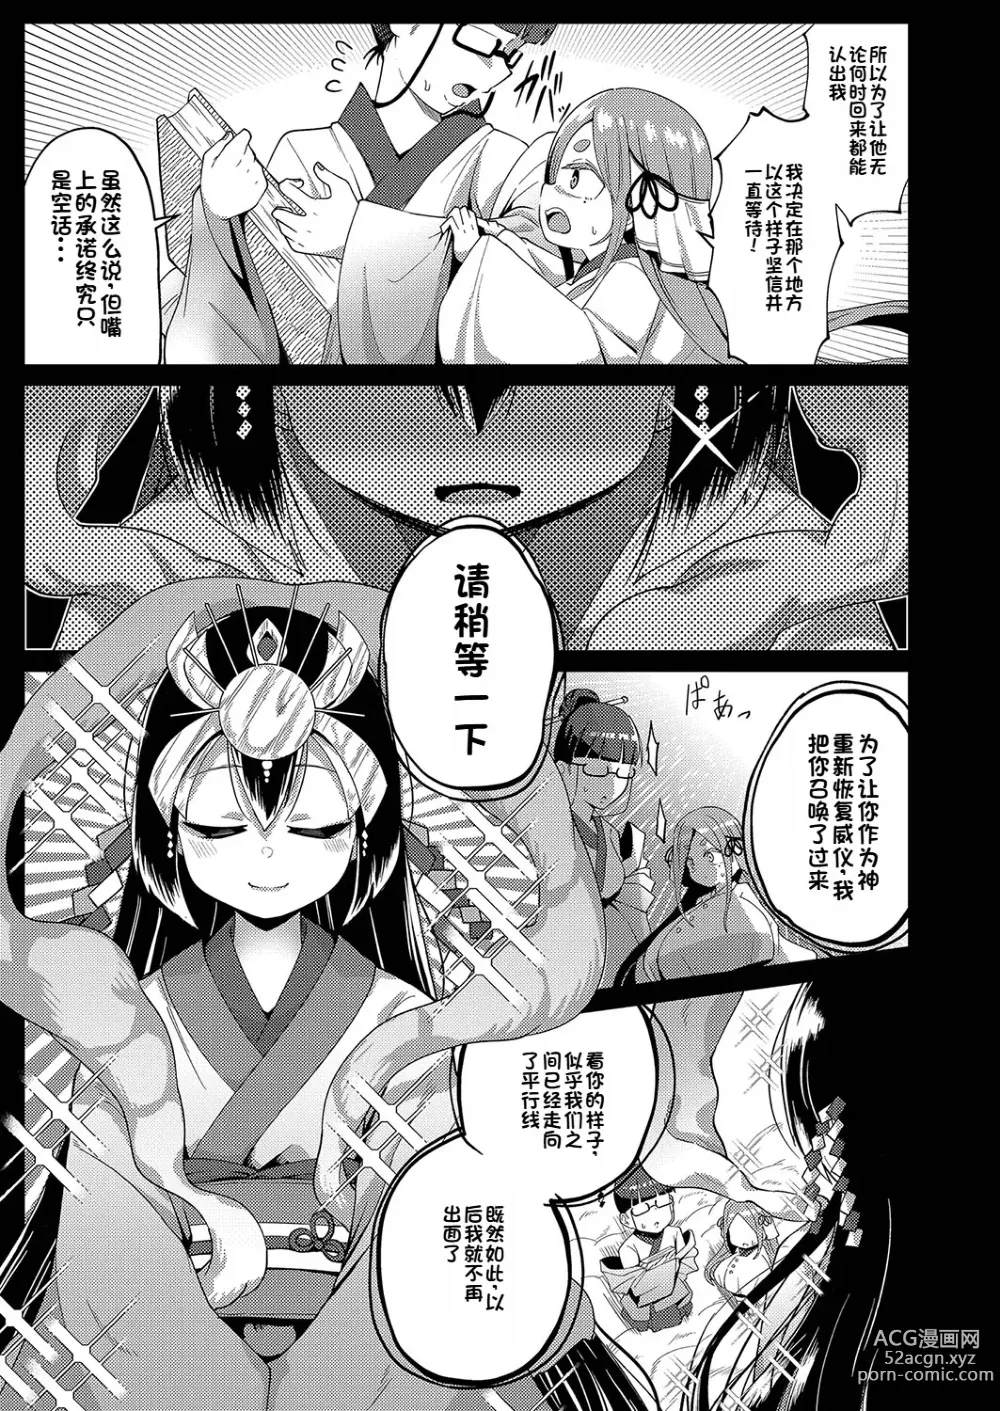 Page 3 of manga Yui